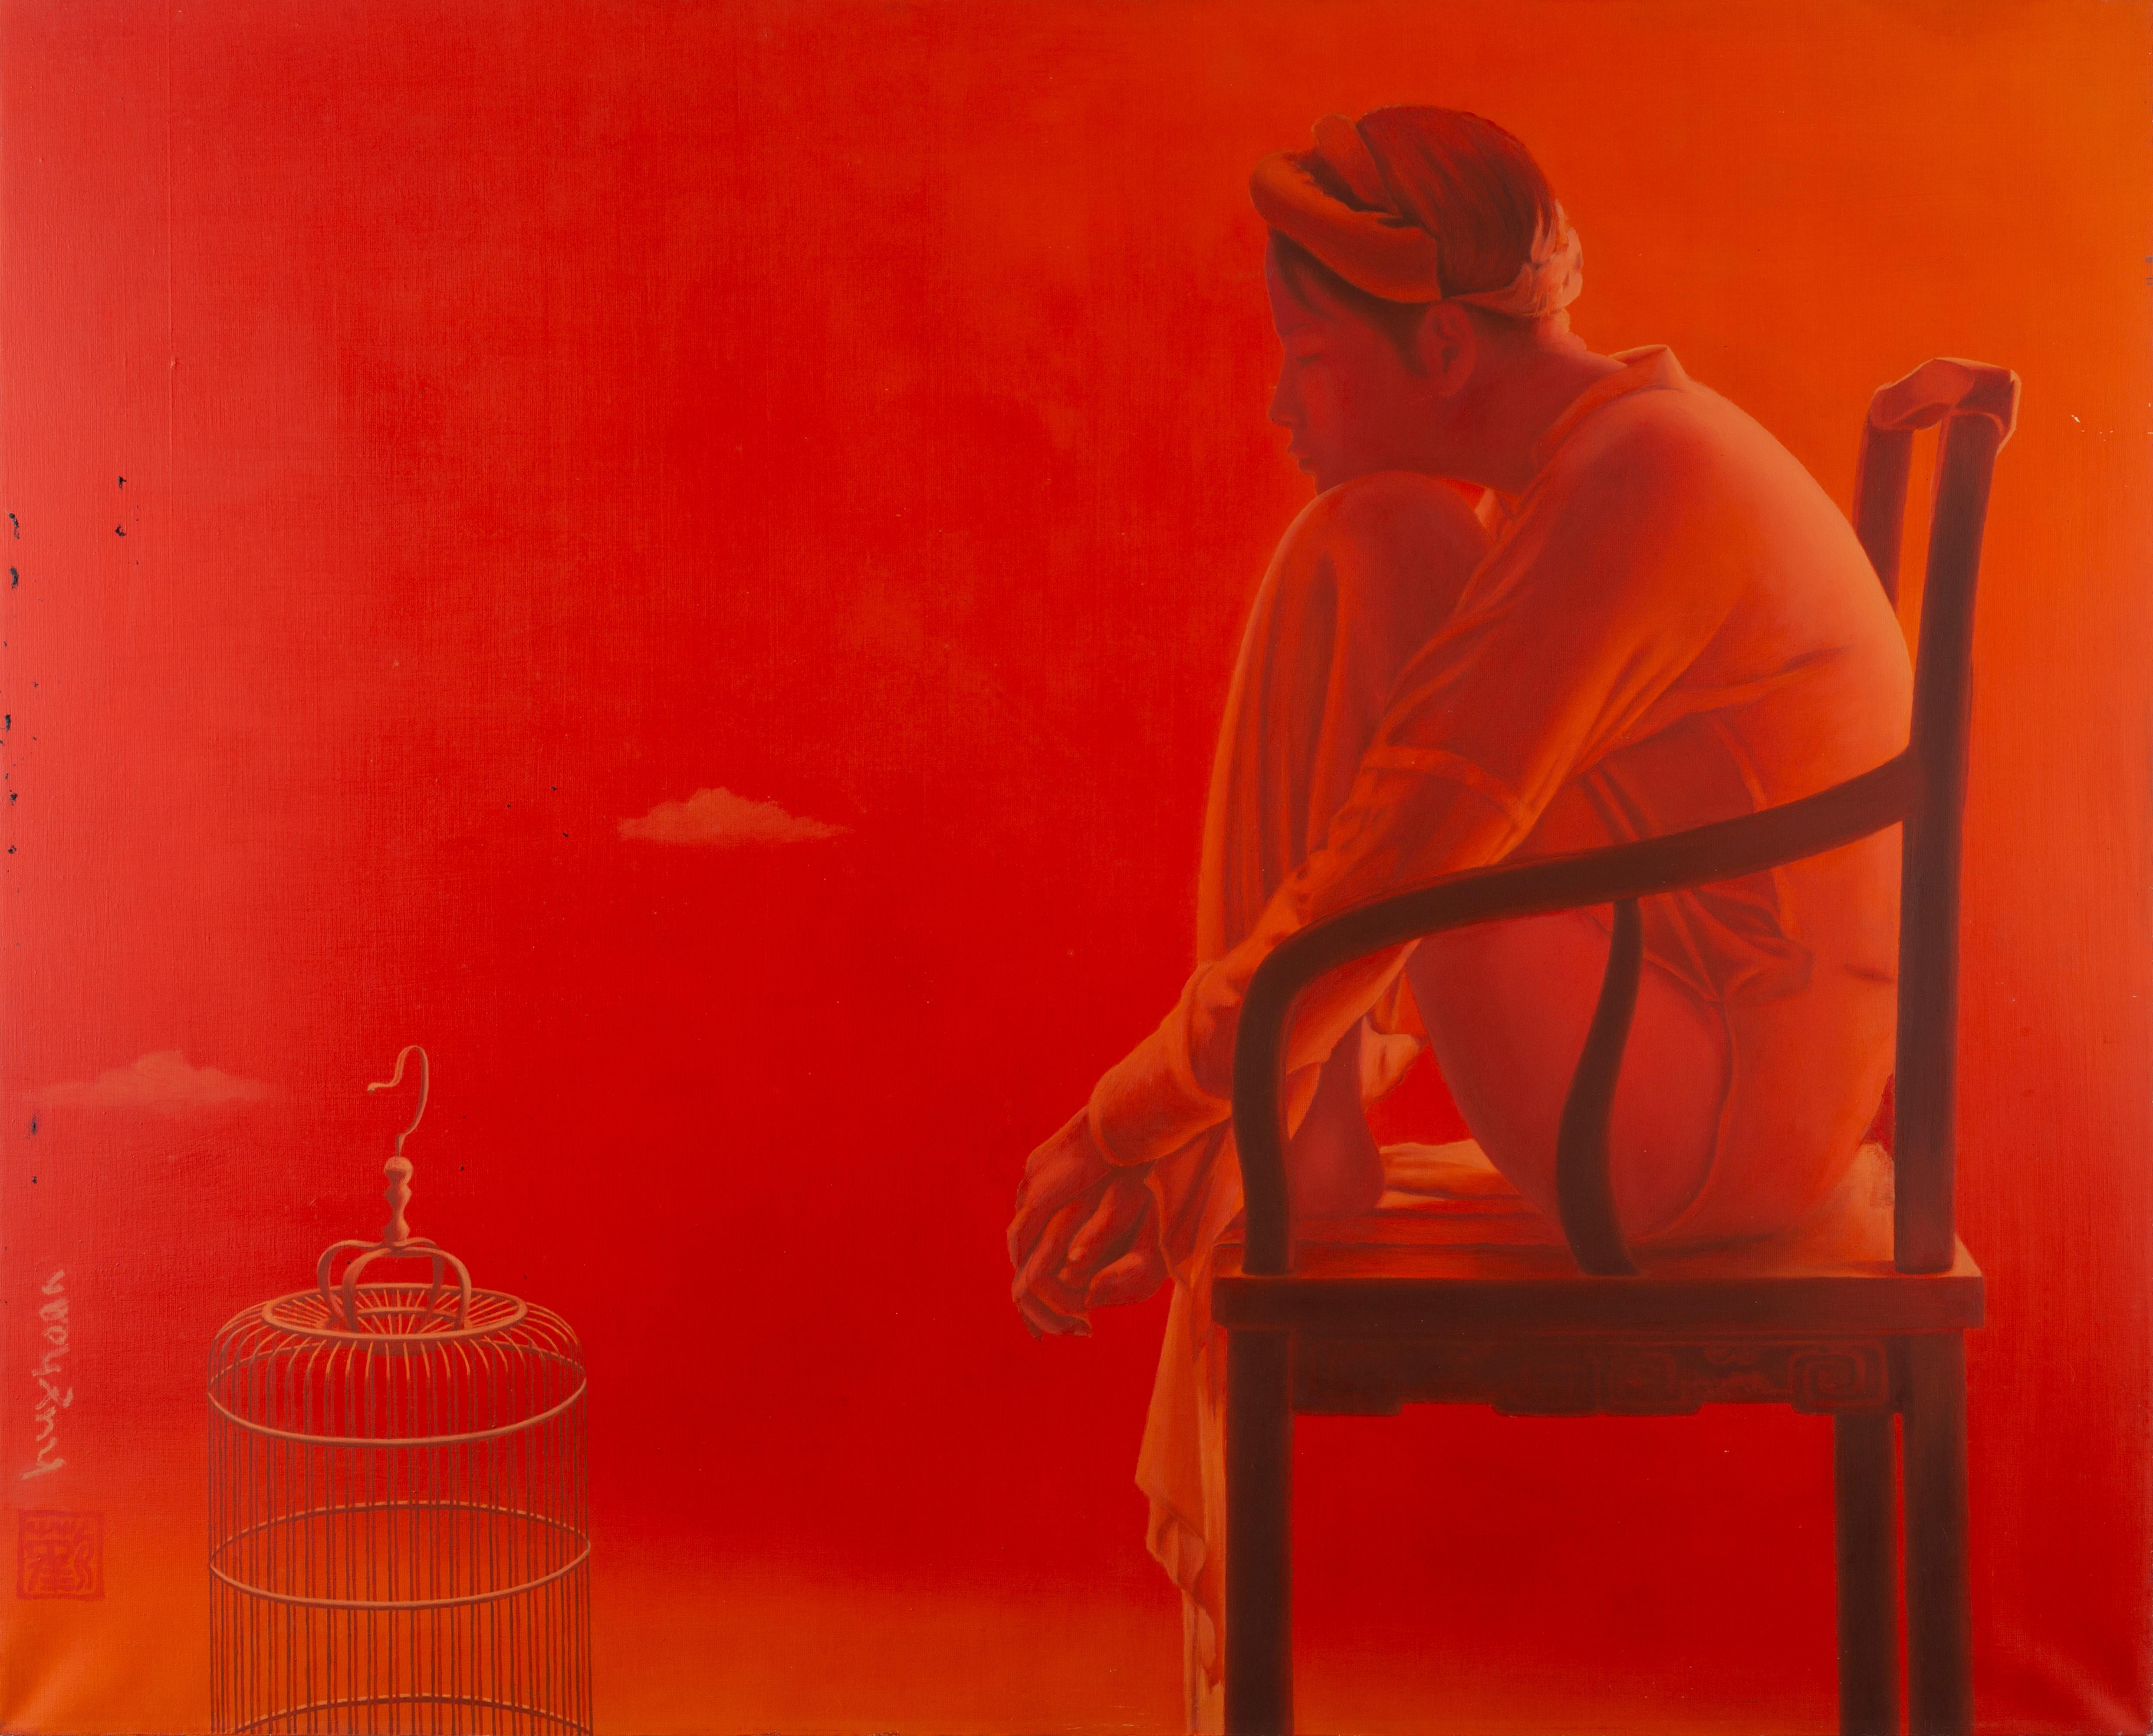 Tran Huy Hoan Nude Painting – „Ineinander verschlungen“, rotes monochromes Ölgemälde, weibliche Figur